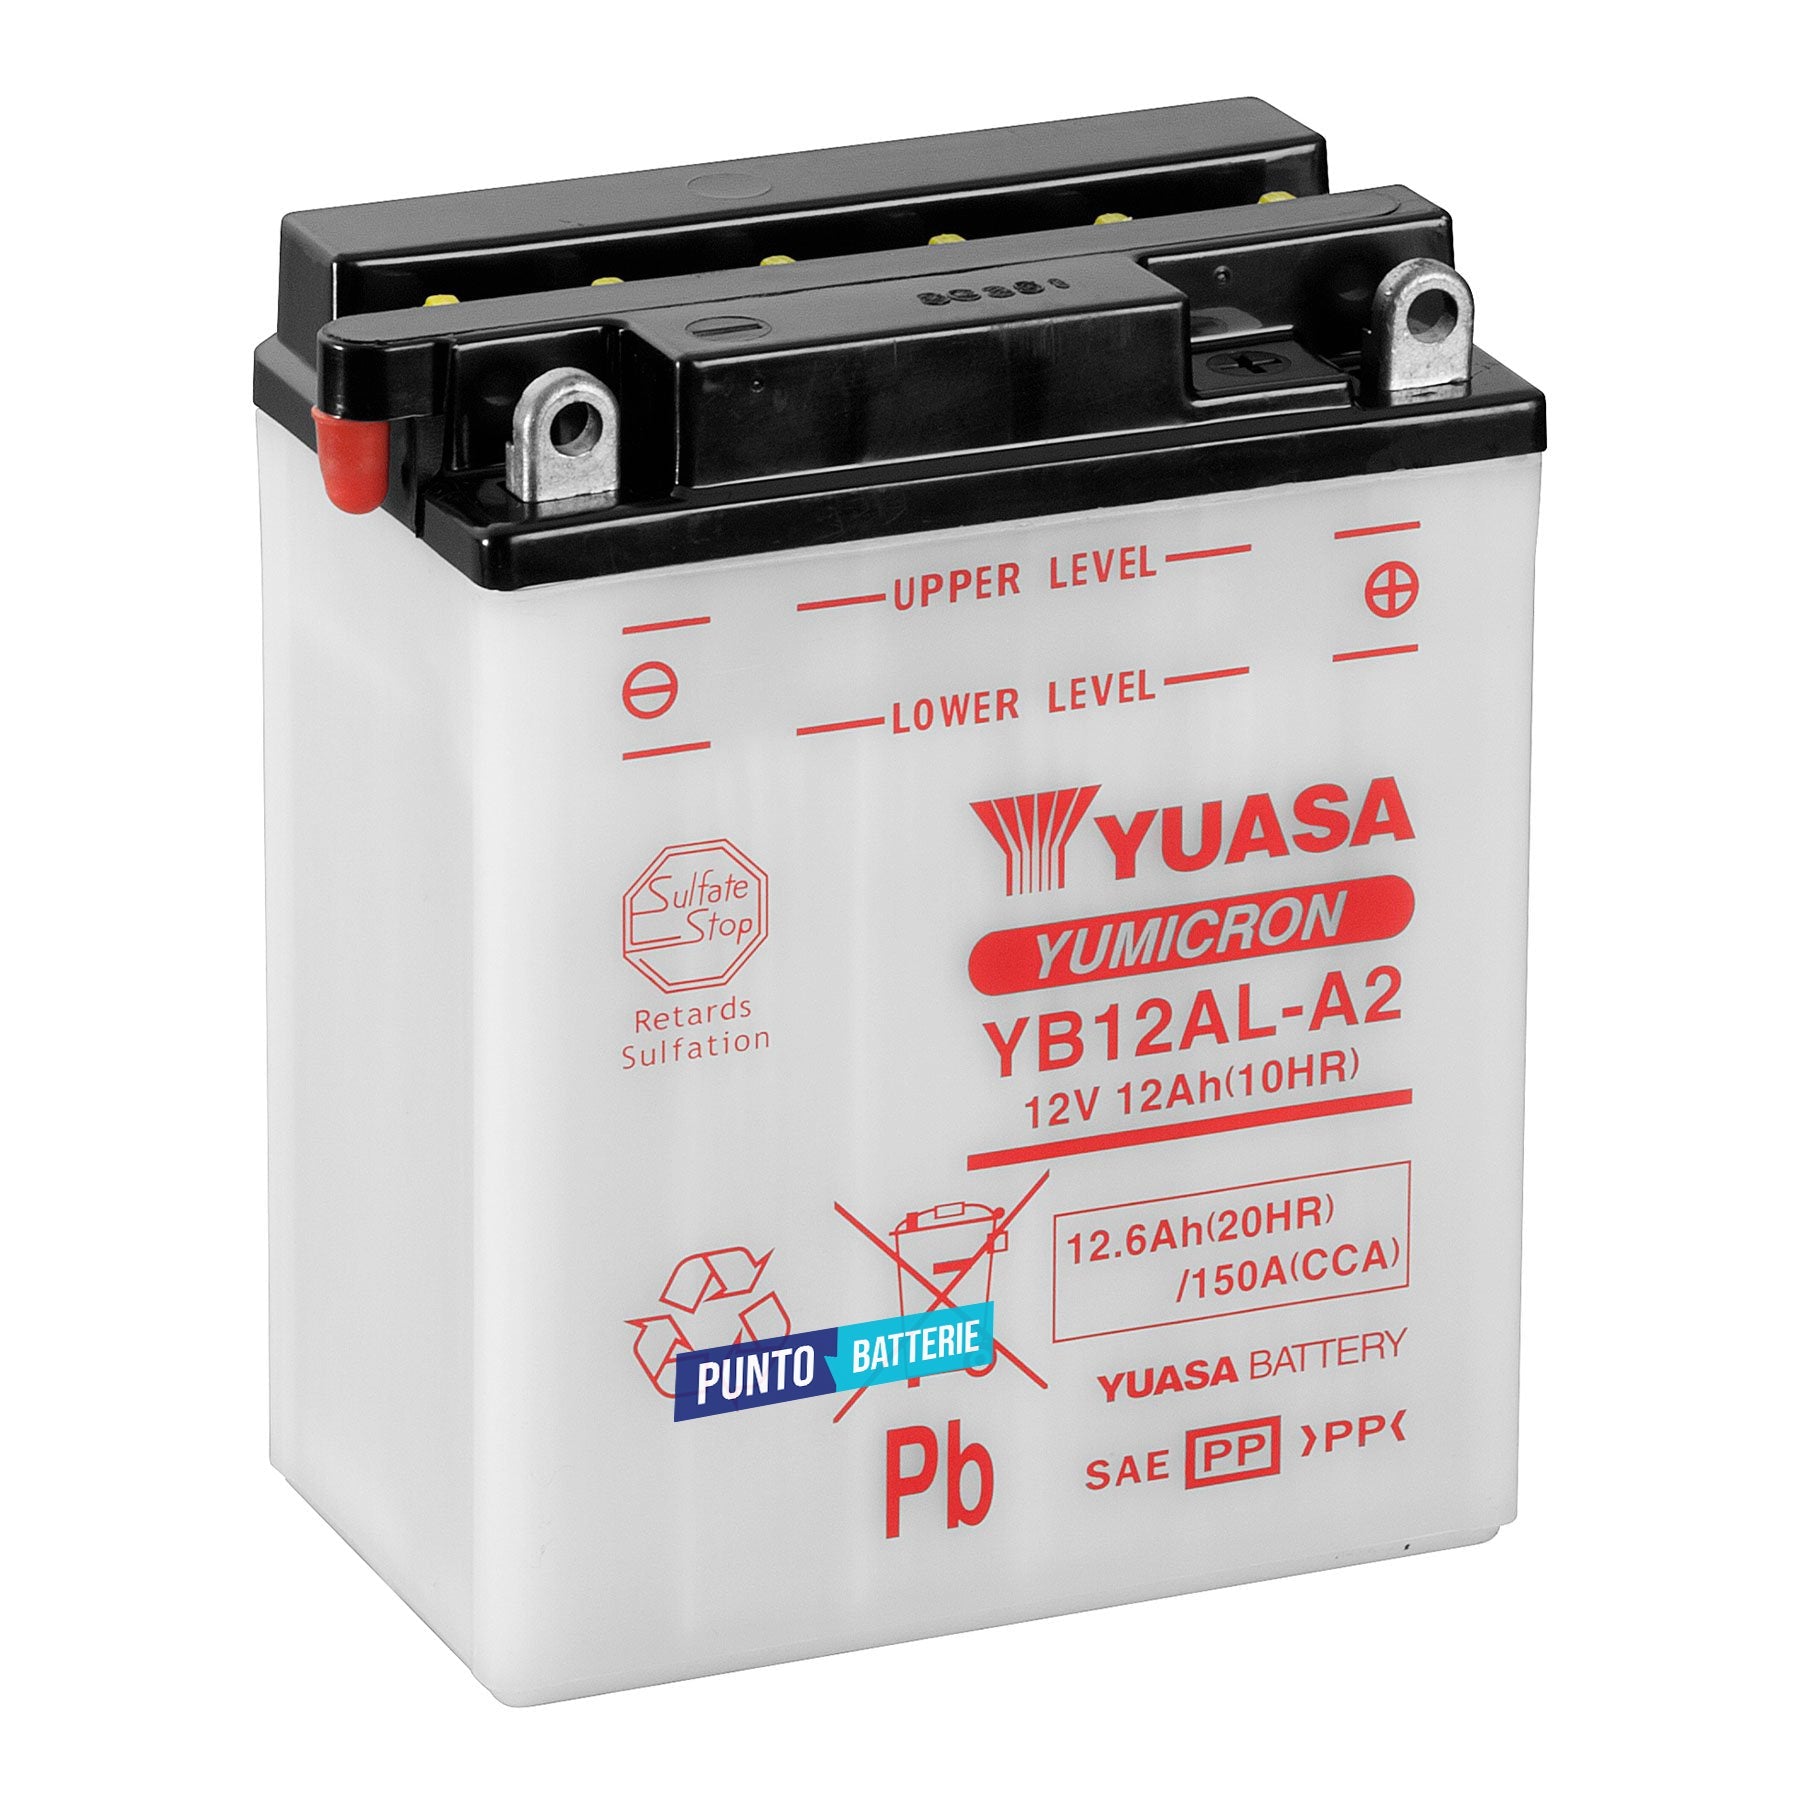 Batteria originale Yuasa YuMicron YB12AL-A2, dimensioni 134 x 80 x 160, polo positivo a destra, 12 volt, 12 amperora, 150 ampere. Batteria per moto, scooter e powersport.